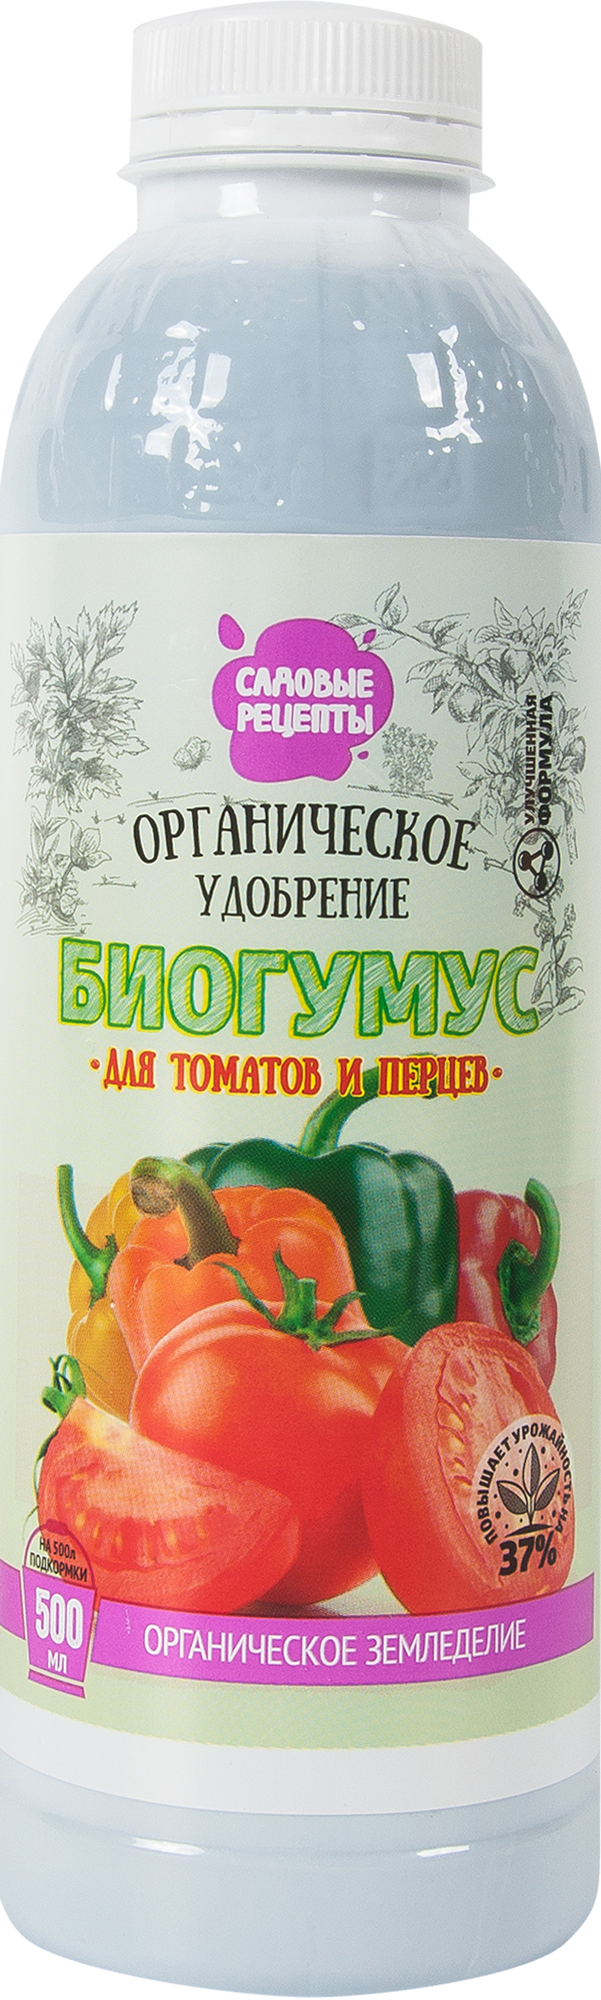 82539910 Удобрение Биогумус для томатов и перцев 0.5 л STLM-0029322 САДОВЫЕ РЕЦЕПТЫ